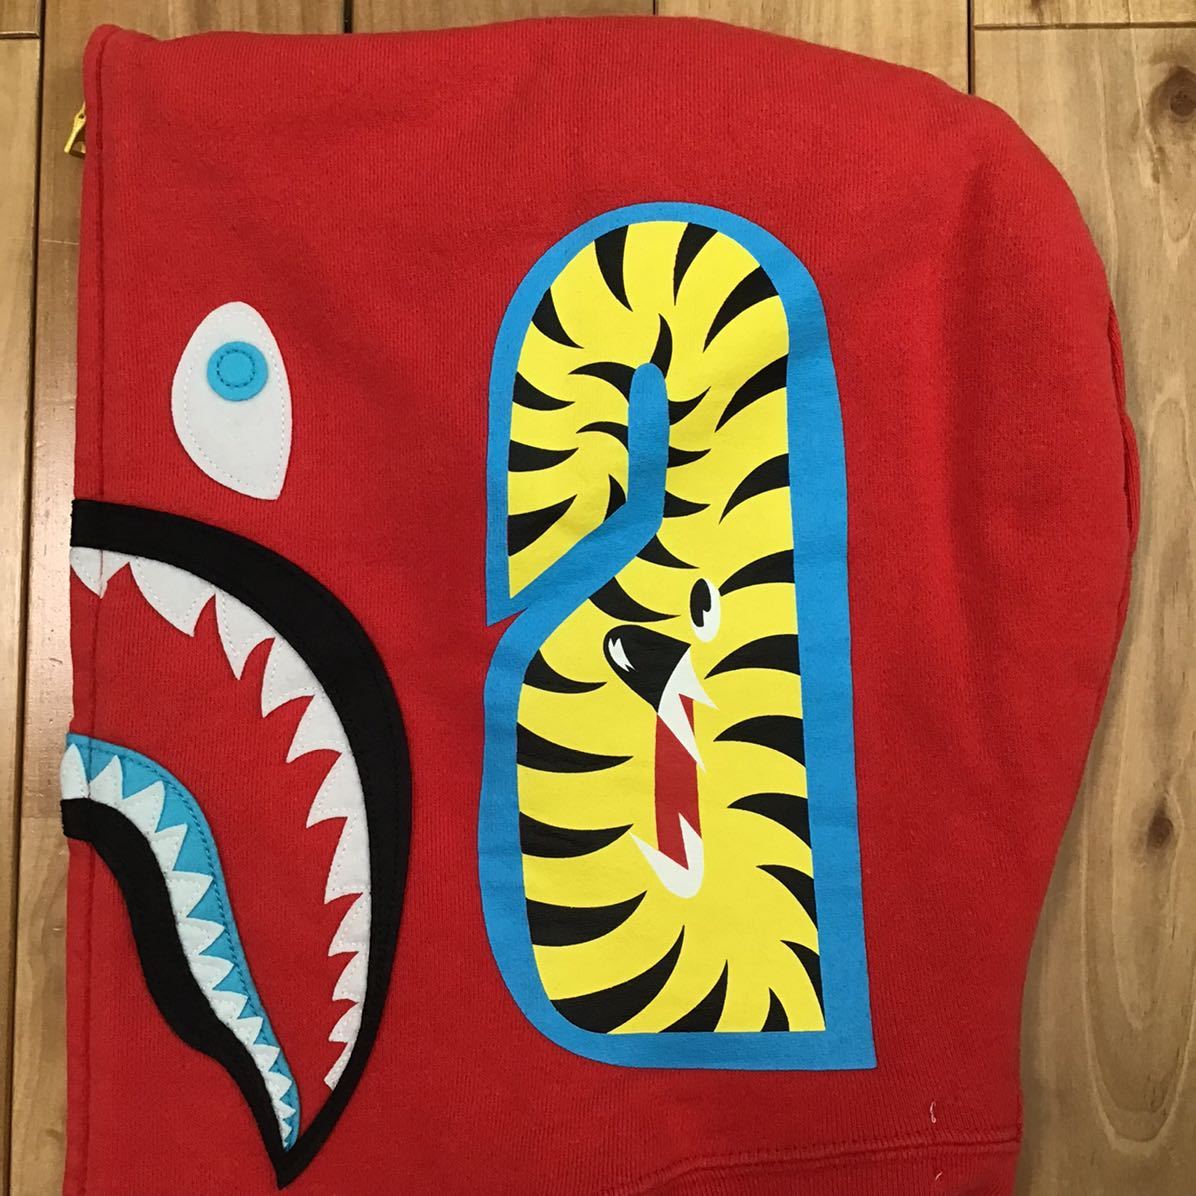 2010年 ネオン シャーク パーカー Mサイズ Red NEON shark full zip hoodie a bathing ape BAPE エイプ ベイプ アベイシングエイプ WGM d85_画像5